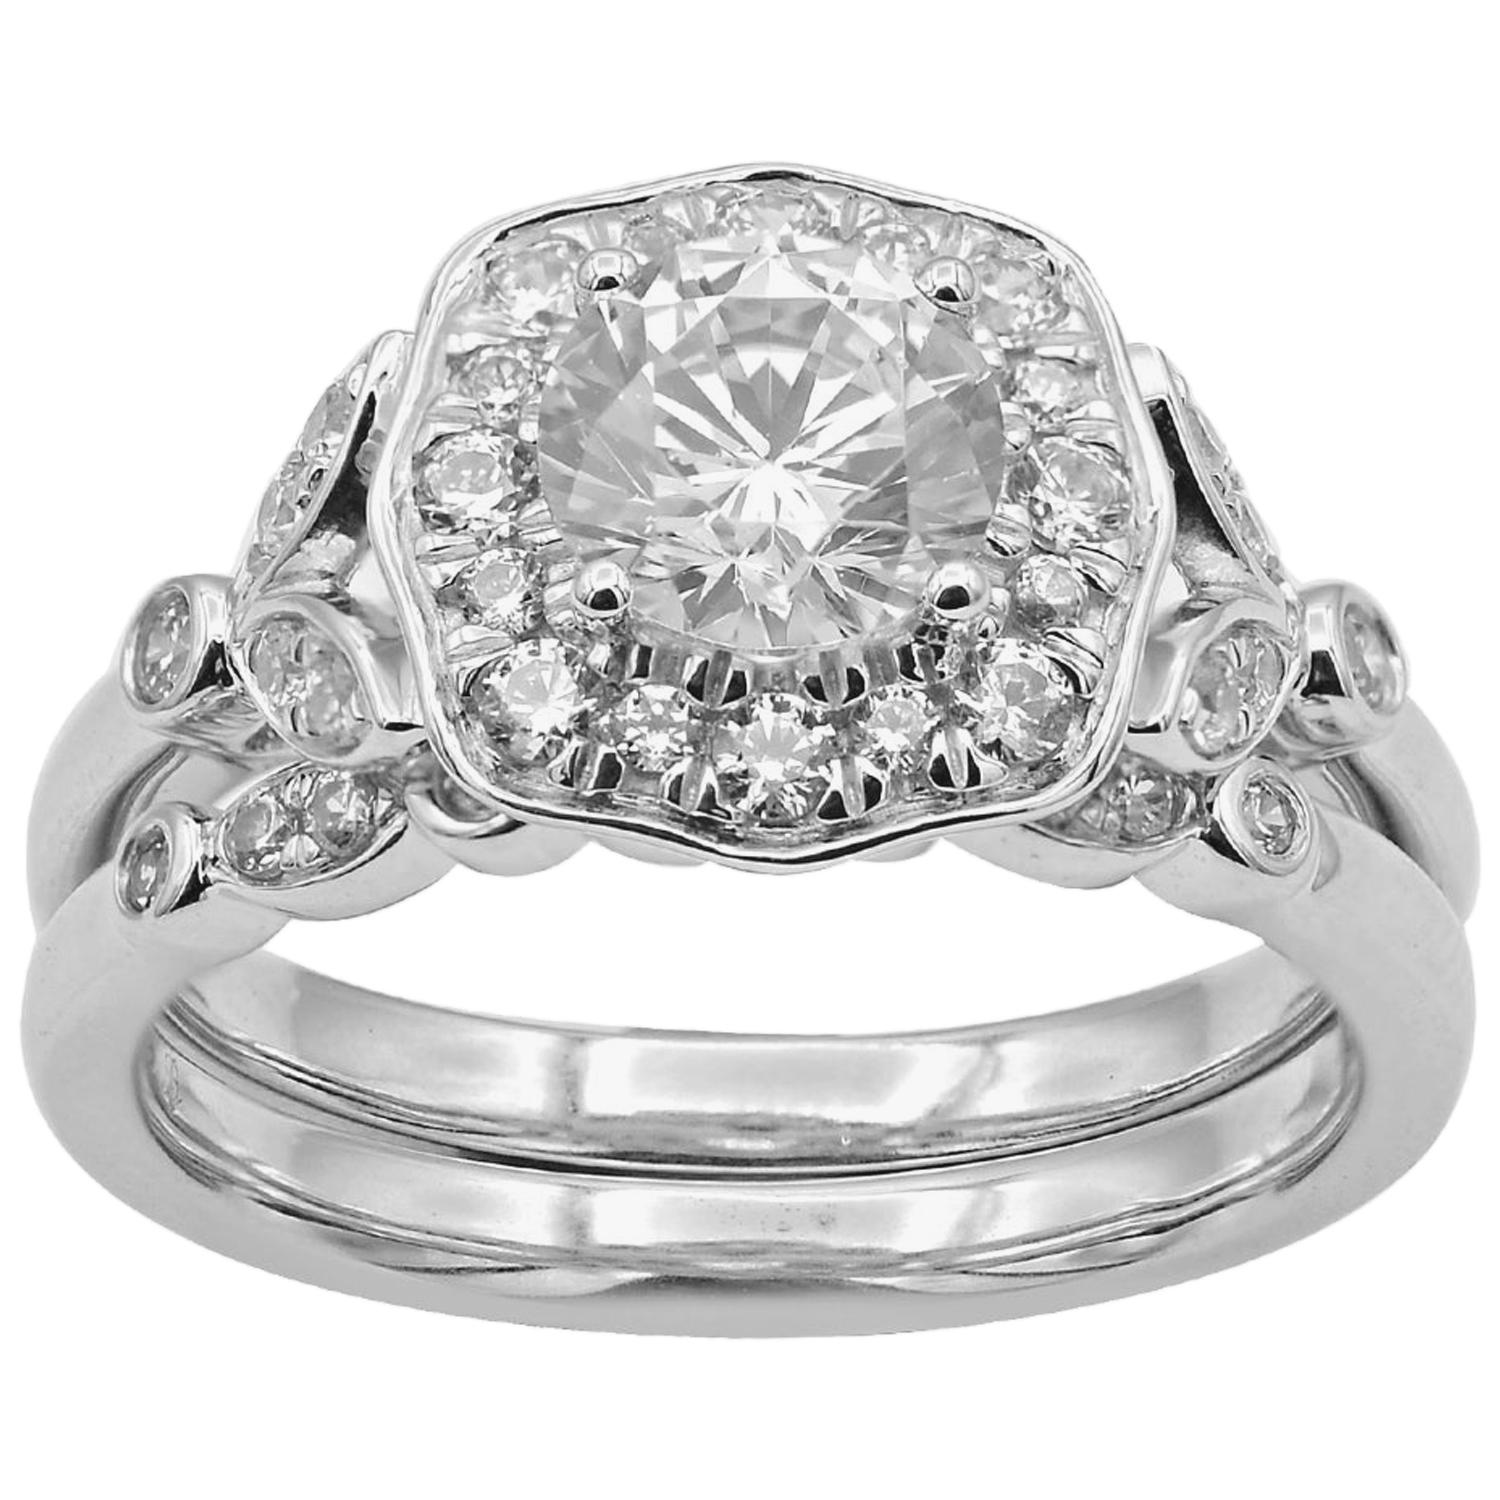 TJD 1.50 Carat Round Diamond 18 Karat White Gold Halo Bridal Ring Set For Sale